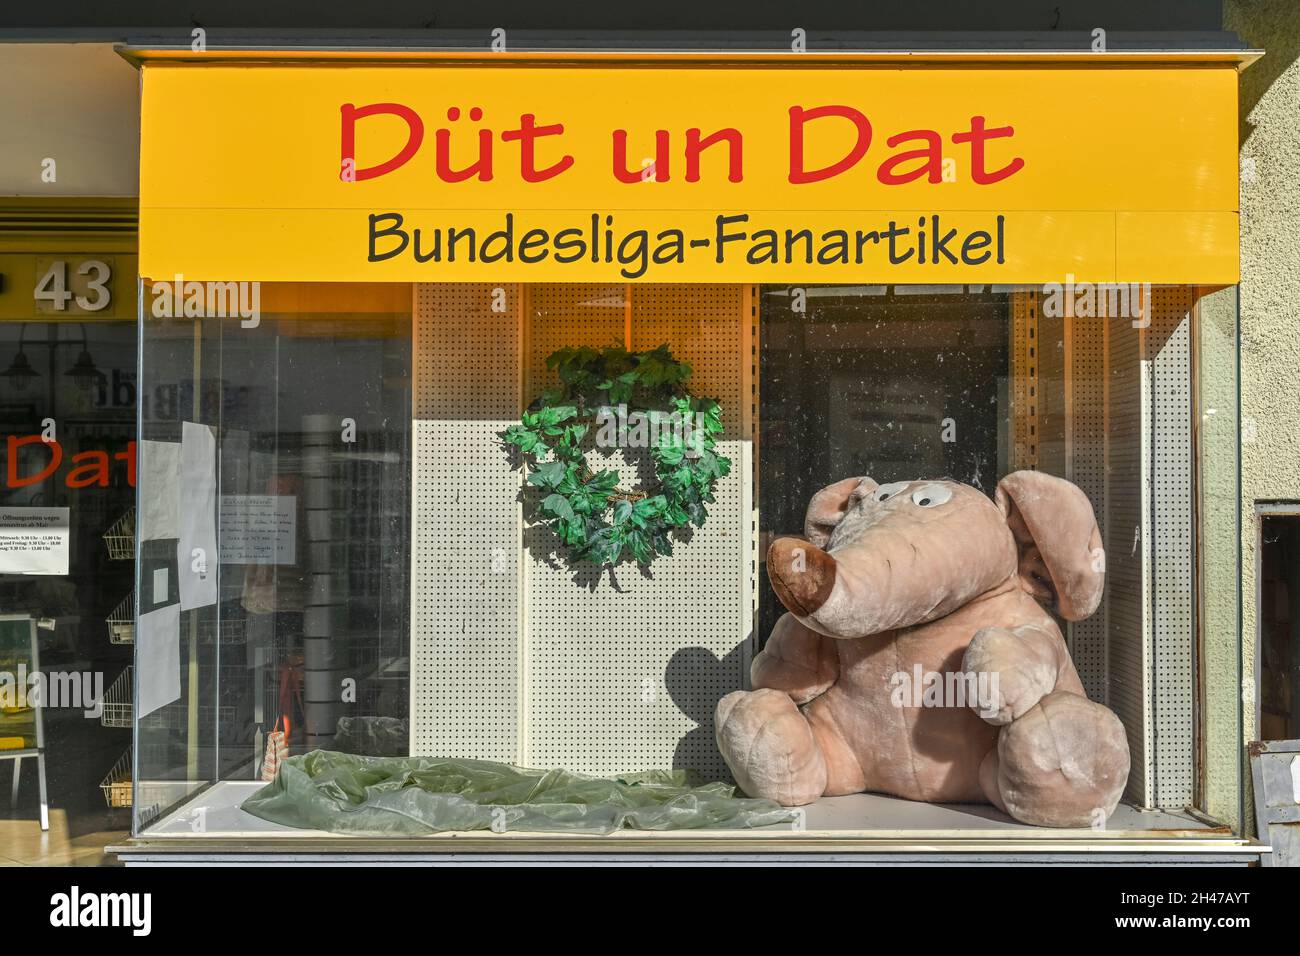 Schaufenster, Düt und Dat, Münchhausenstadt Bodenwerder, Niedersachsen, Deutschland Stock Photo